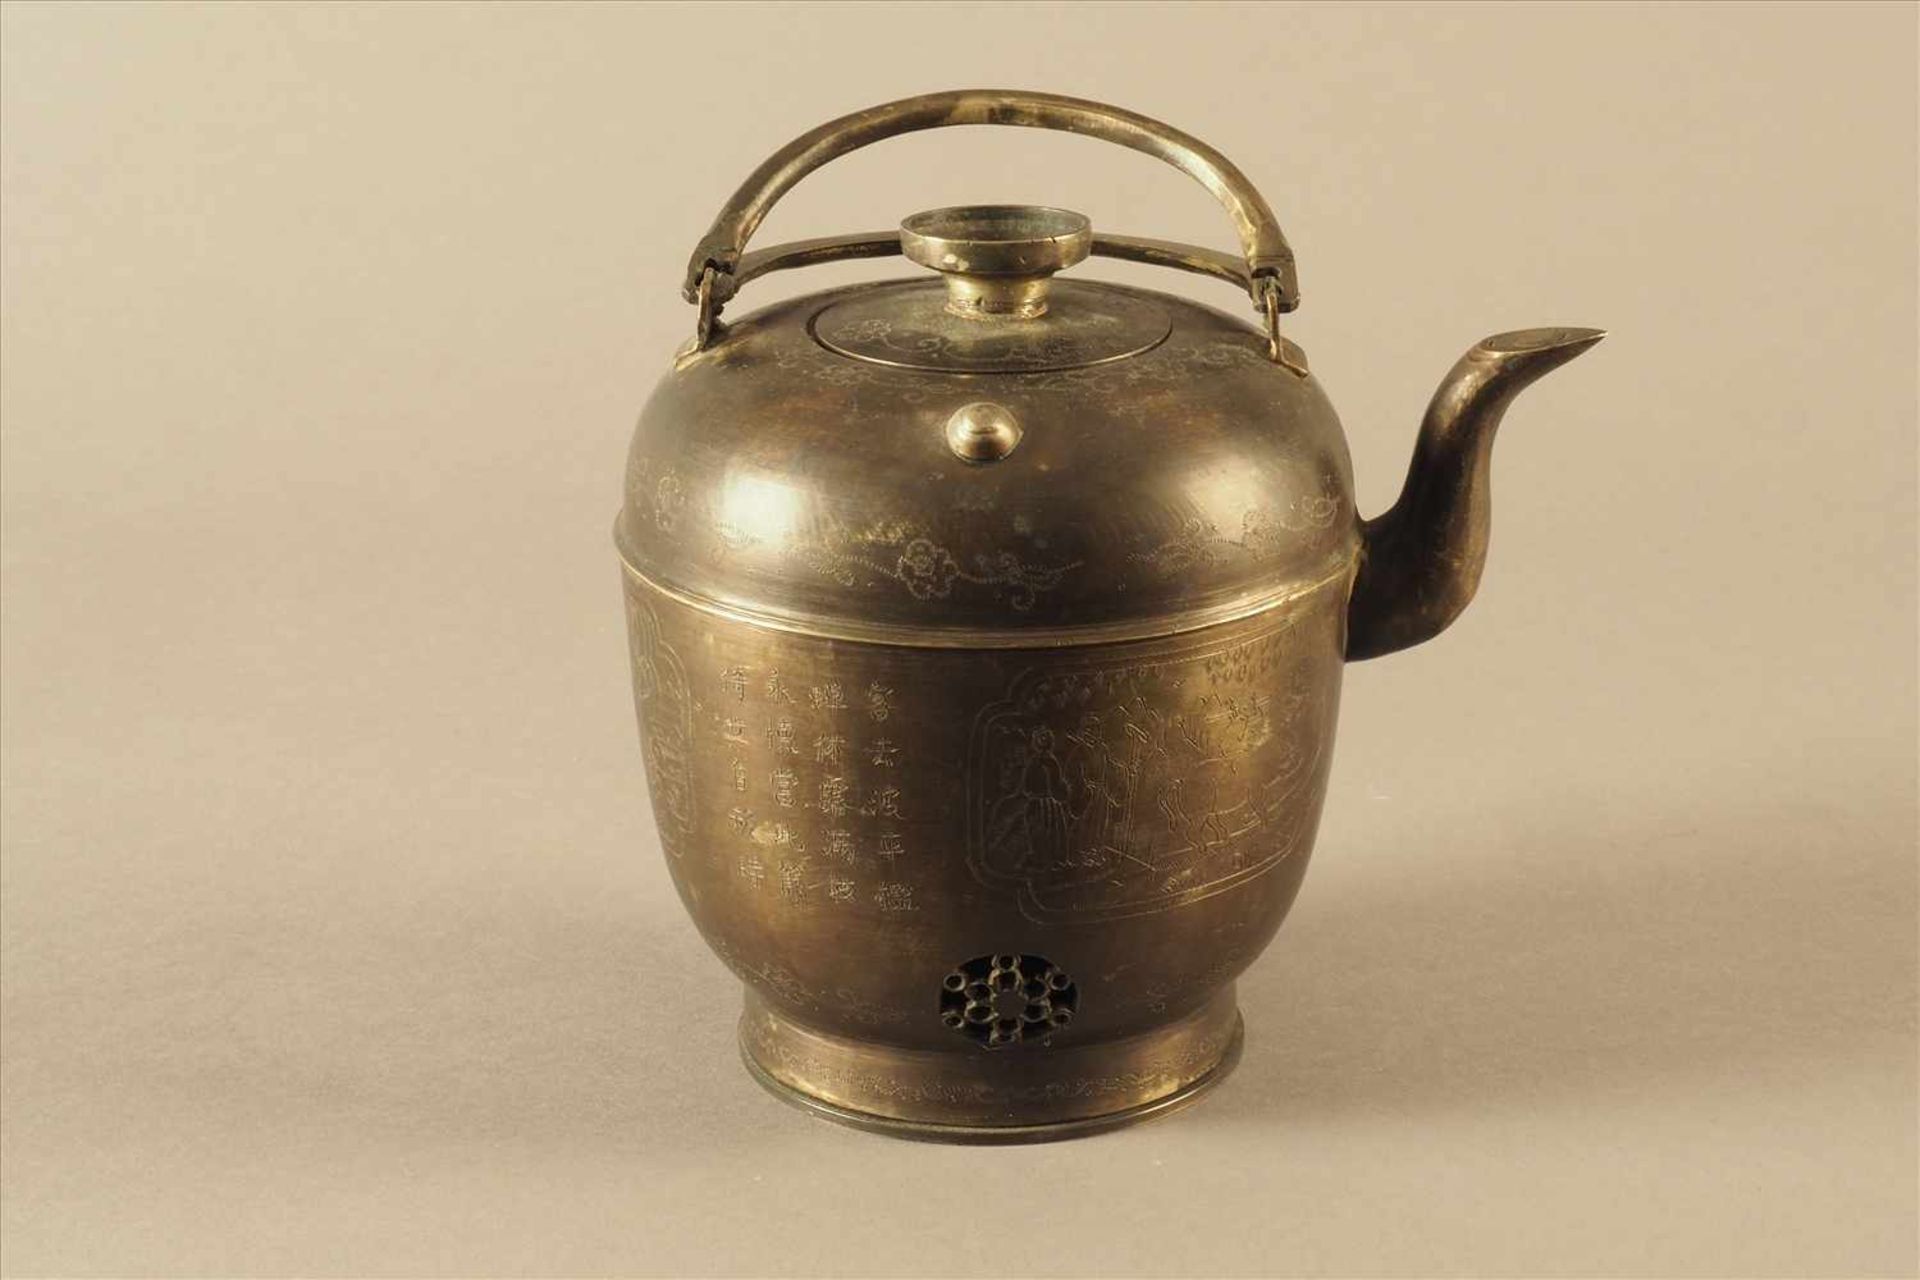 Asiatische TeekanneBronze, 19. Jh., prunkvoll graviert und beschriftet, Maße: H15 x D12,5cm. - Bild 3 aus 6